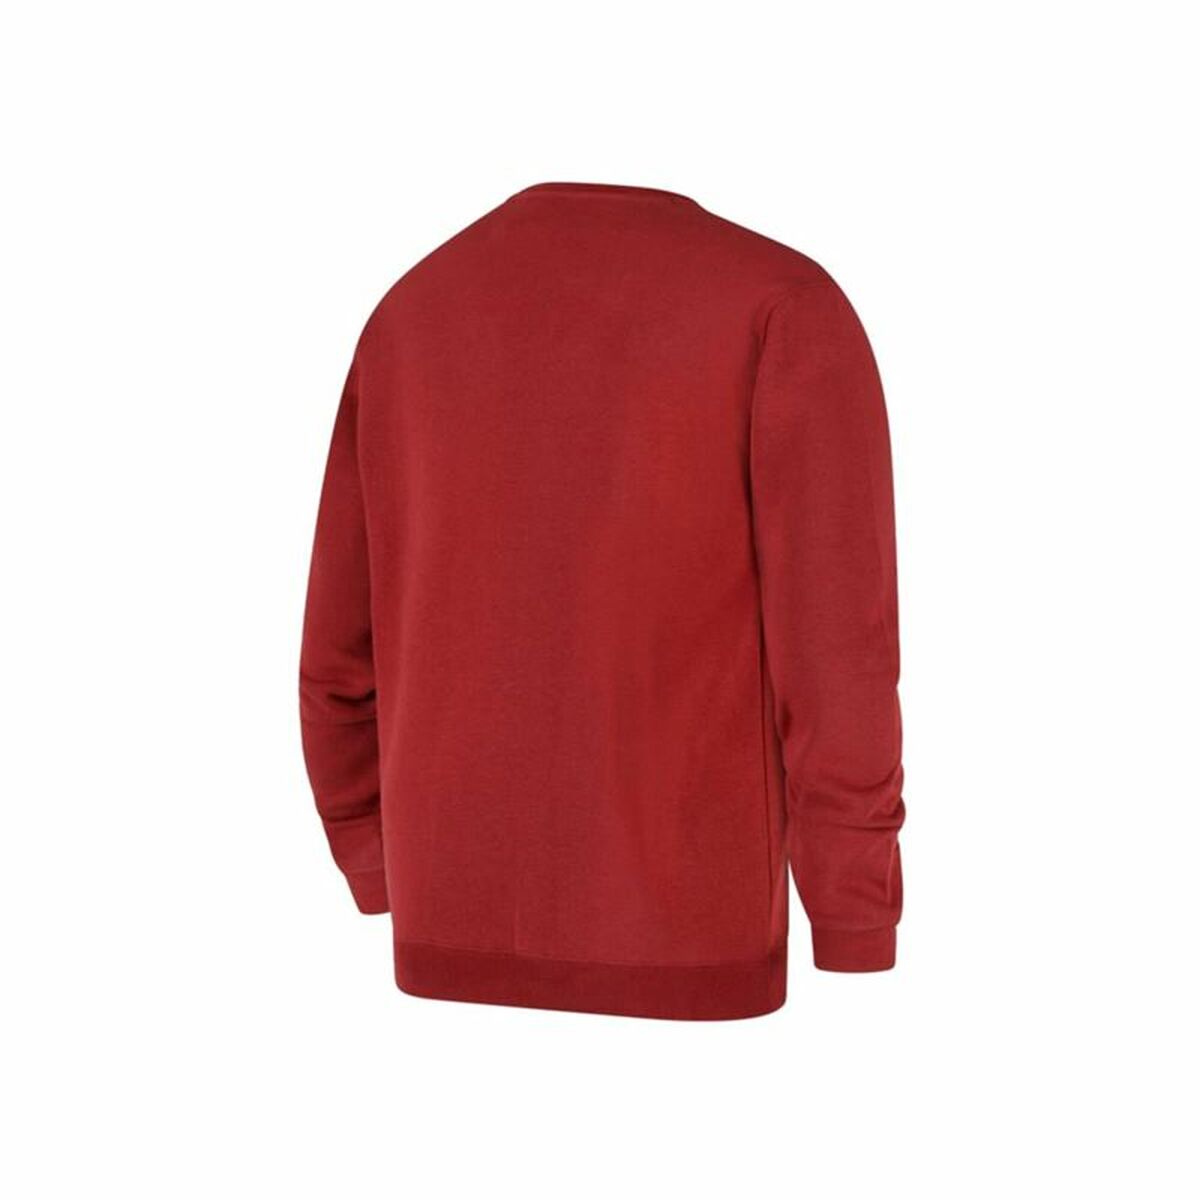 Kaufe Herren Sweater ohne Kapuze Champion Rot bei AWK Flagship um € 58.00